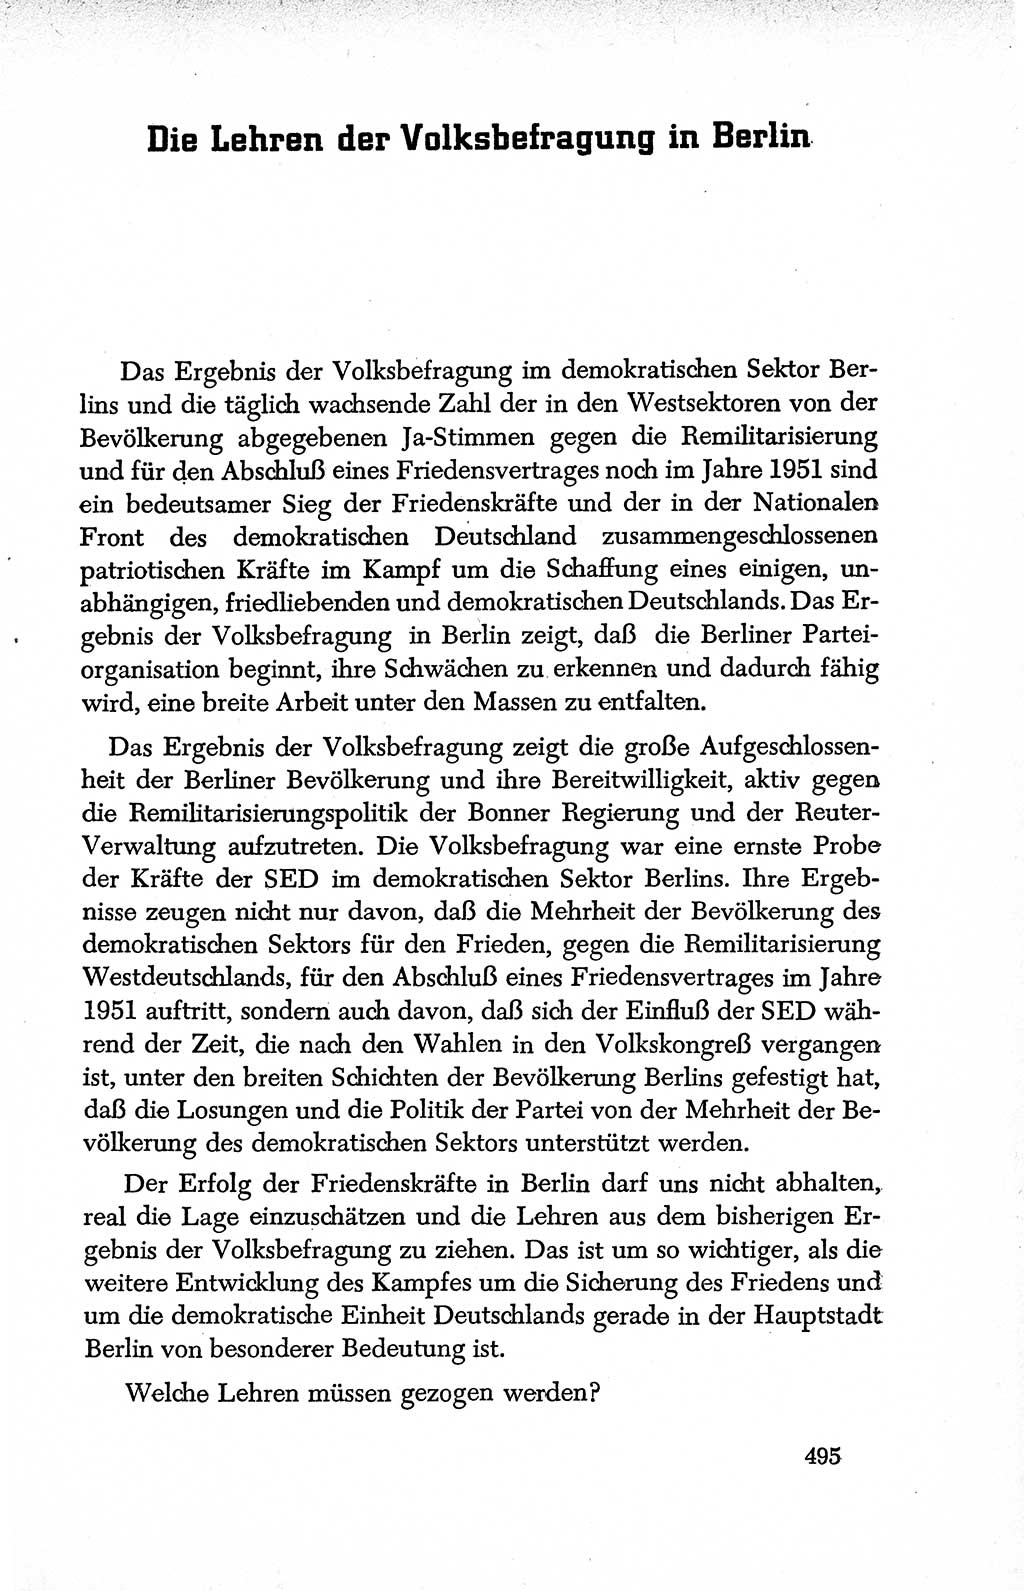 Dokumente der Sozialistischen Einheitspartei Deutschlands (SED) [Deutsche Demokratische Republik (DDR)] 1950-1952, Seite 495 (Dok. SED DDR 1950-1952, S. 495)